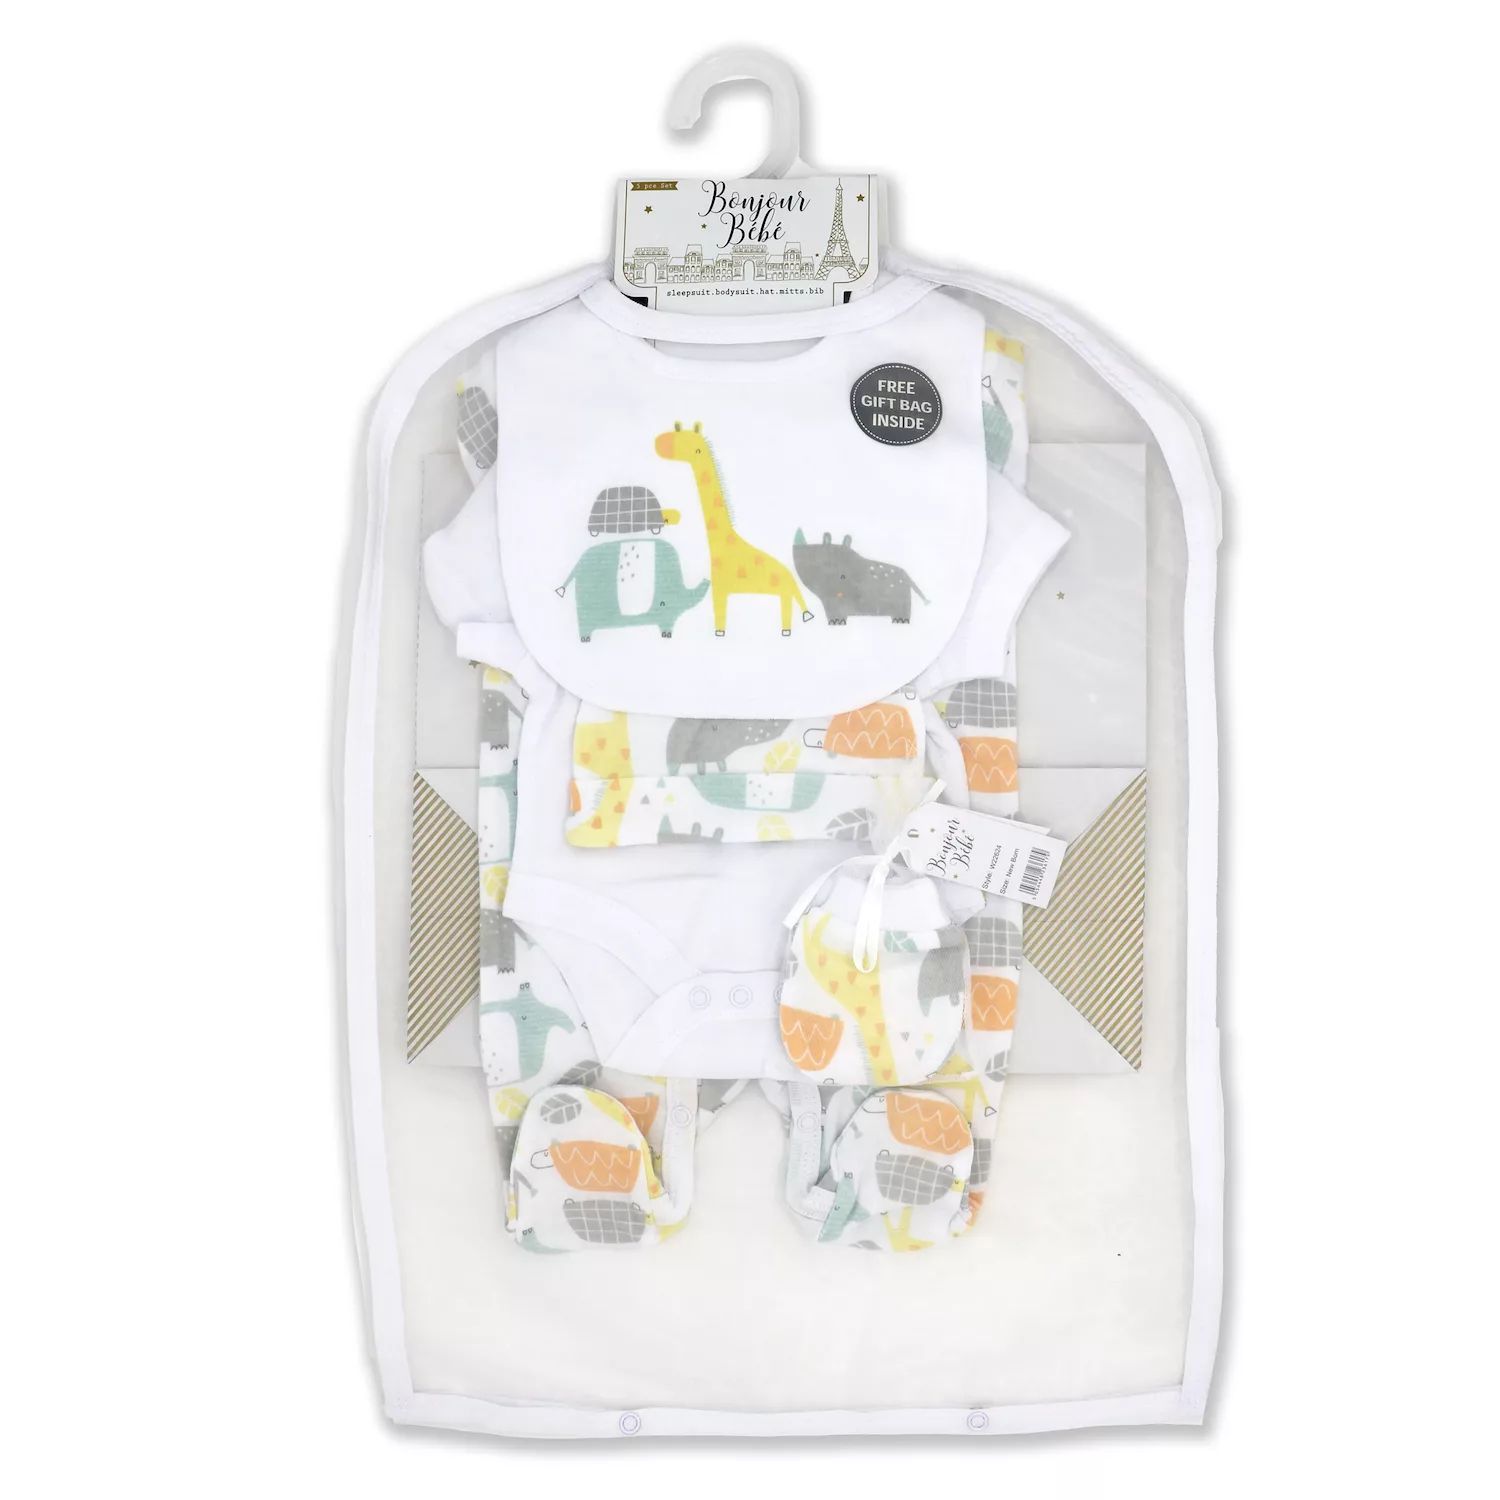 bye bye paris mother baby care bag hi̇gh quality warranty period month 12 Подарочный набор «Цветной зоопарк» из 5 предметов для мальчиков и девочек в сетчатой ​​сумке Rock A Bye Baby Boutique